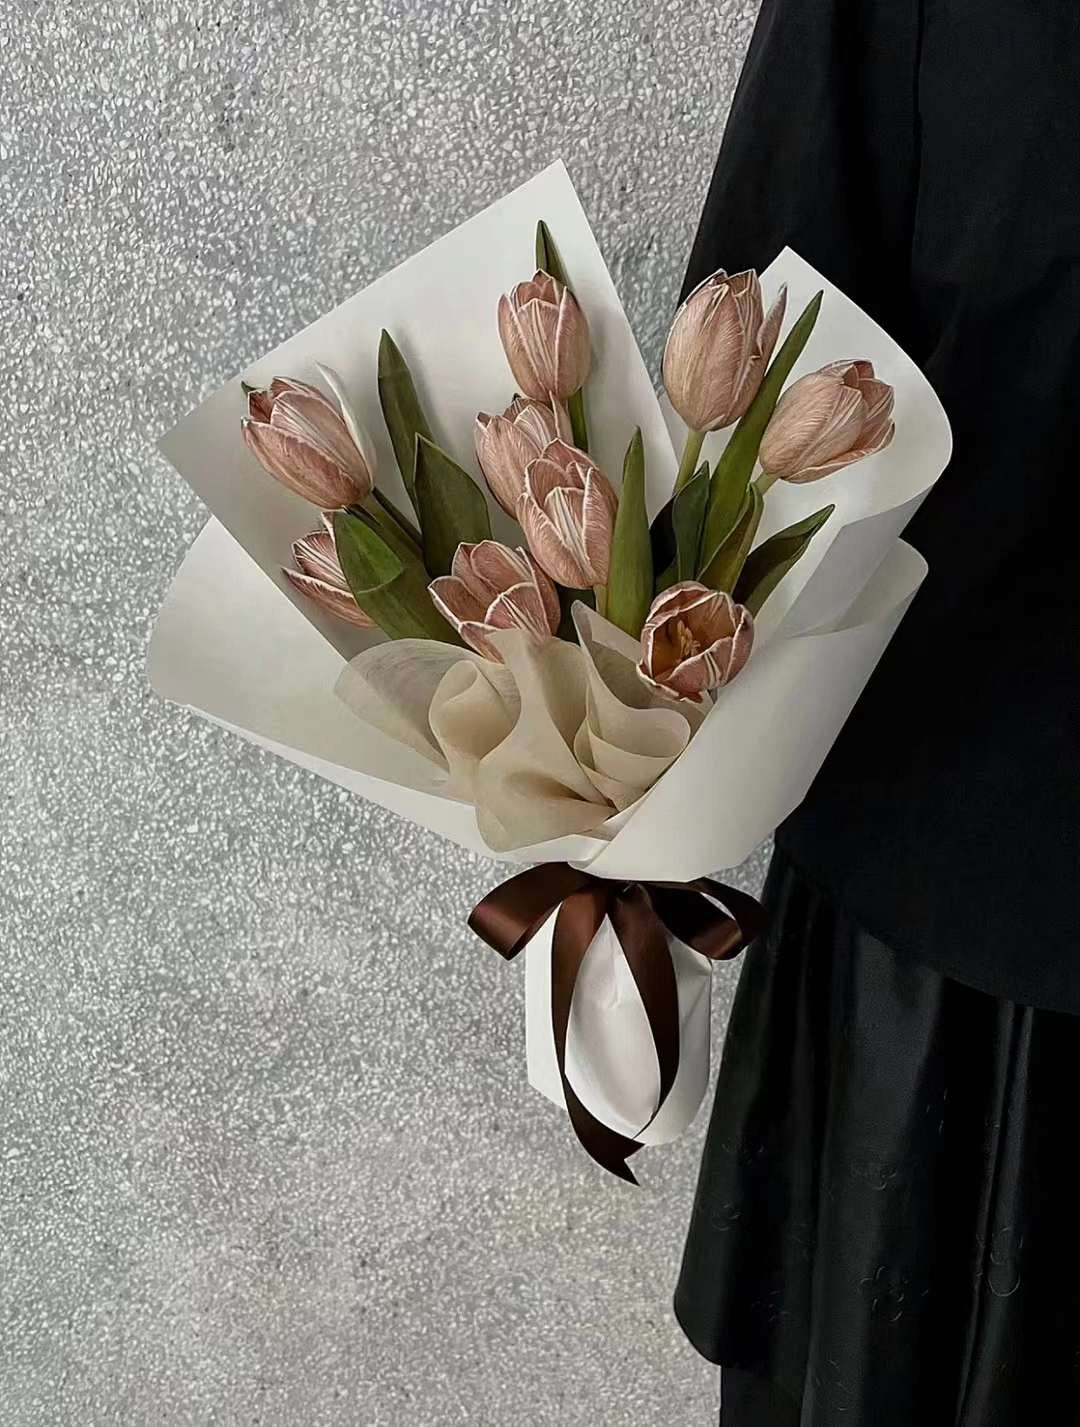 郁金香花束 | Tulips Bouquet